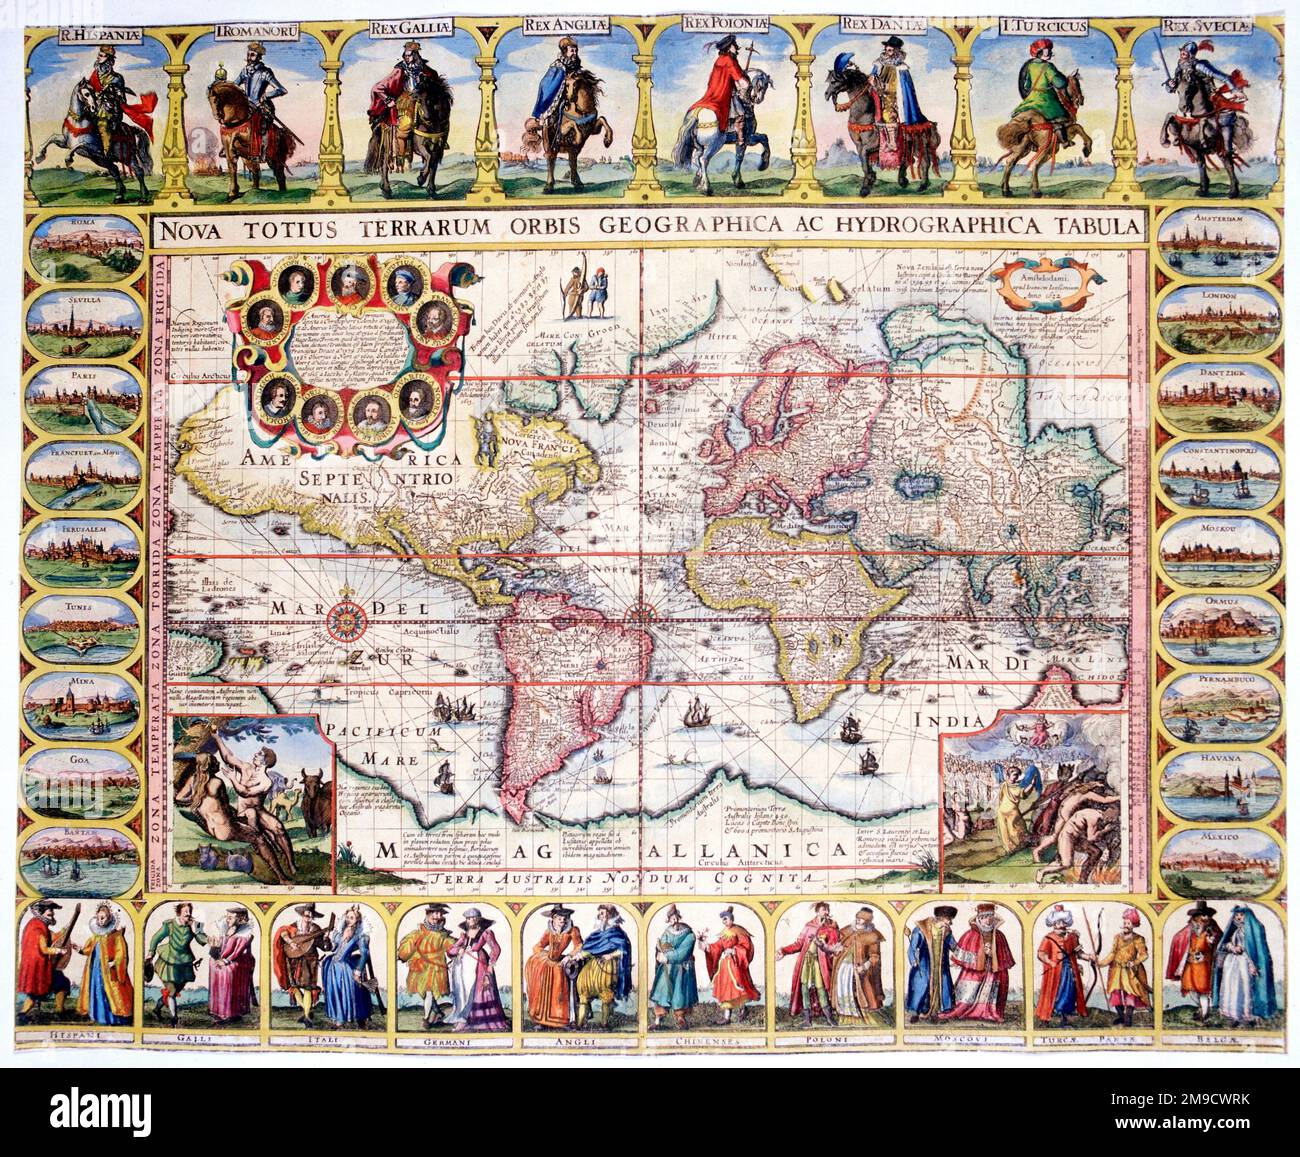 Weltkarte des 17. Jahrhunderts (Mercator-Projektion) mit kostümierten Figuren und Städten - Nova totius terrarum orbis geographica Stockfoto